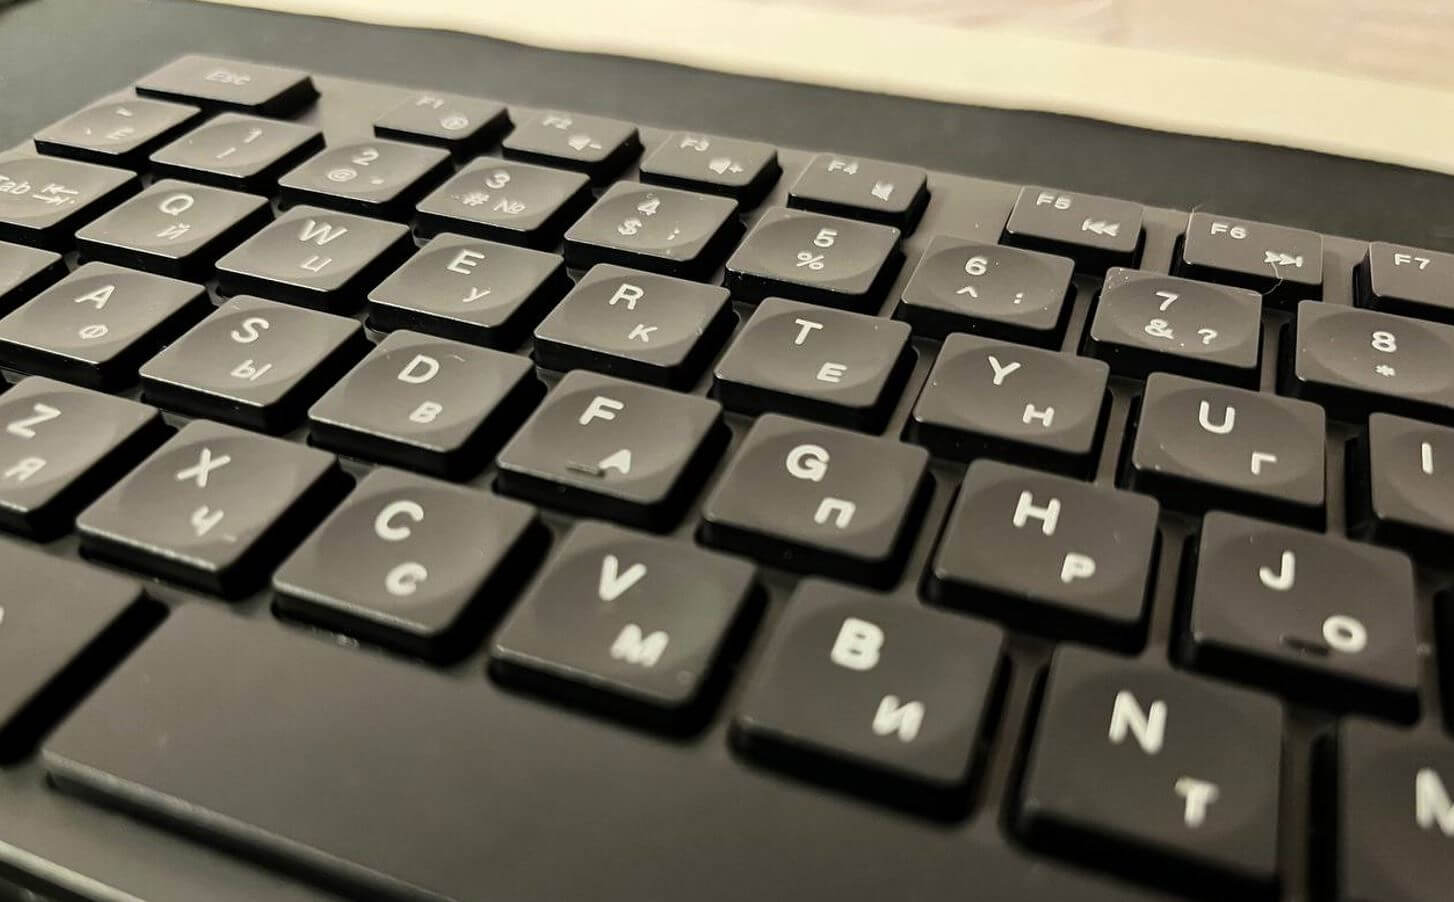 Удобная клавиатура для печати. В клавишах есть небольшое углубление, что позволяет с комфортом печатать. Фото.